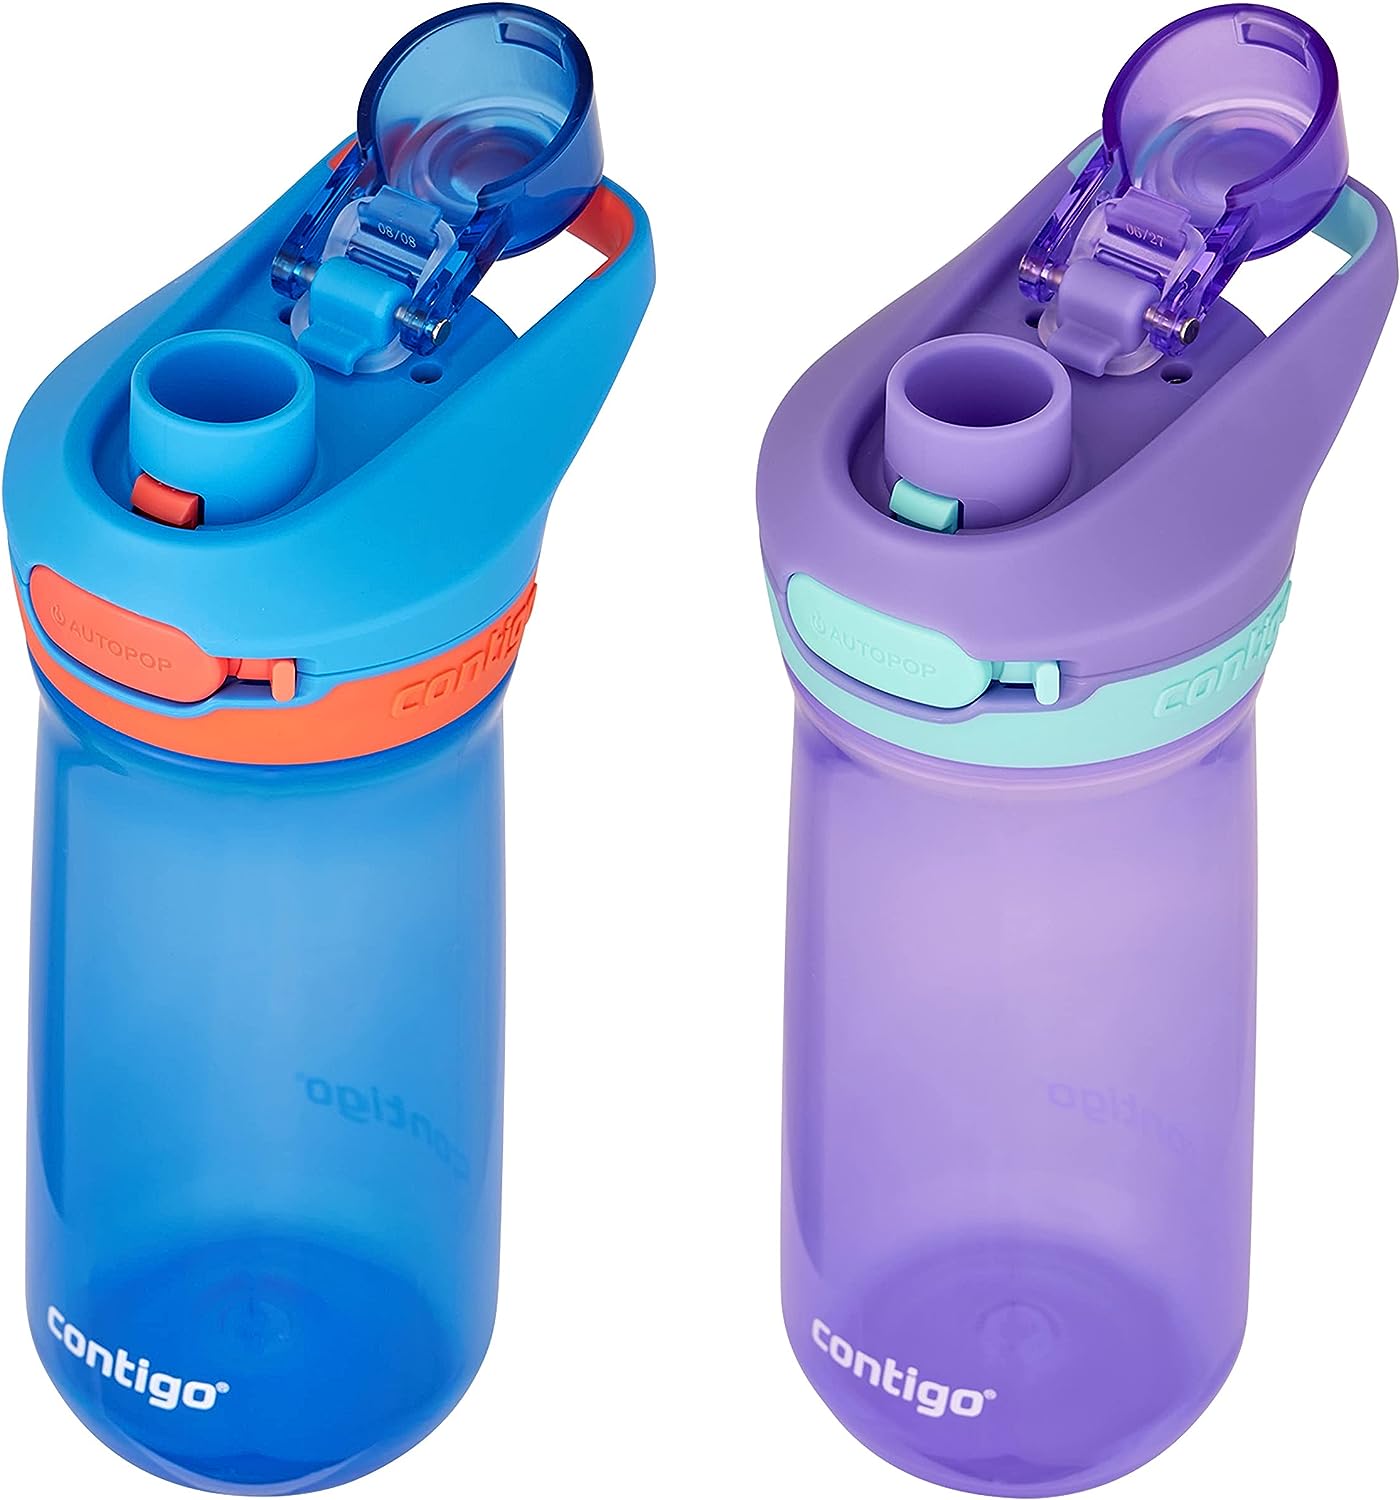 זוג בקבוקי ילדים קונטיגו JESSIE סגול וכחול 420 מ"ל - Contigo